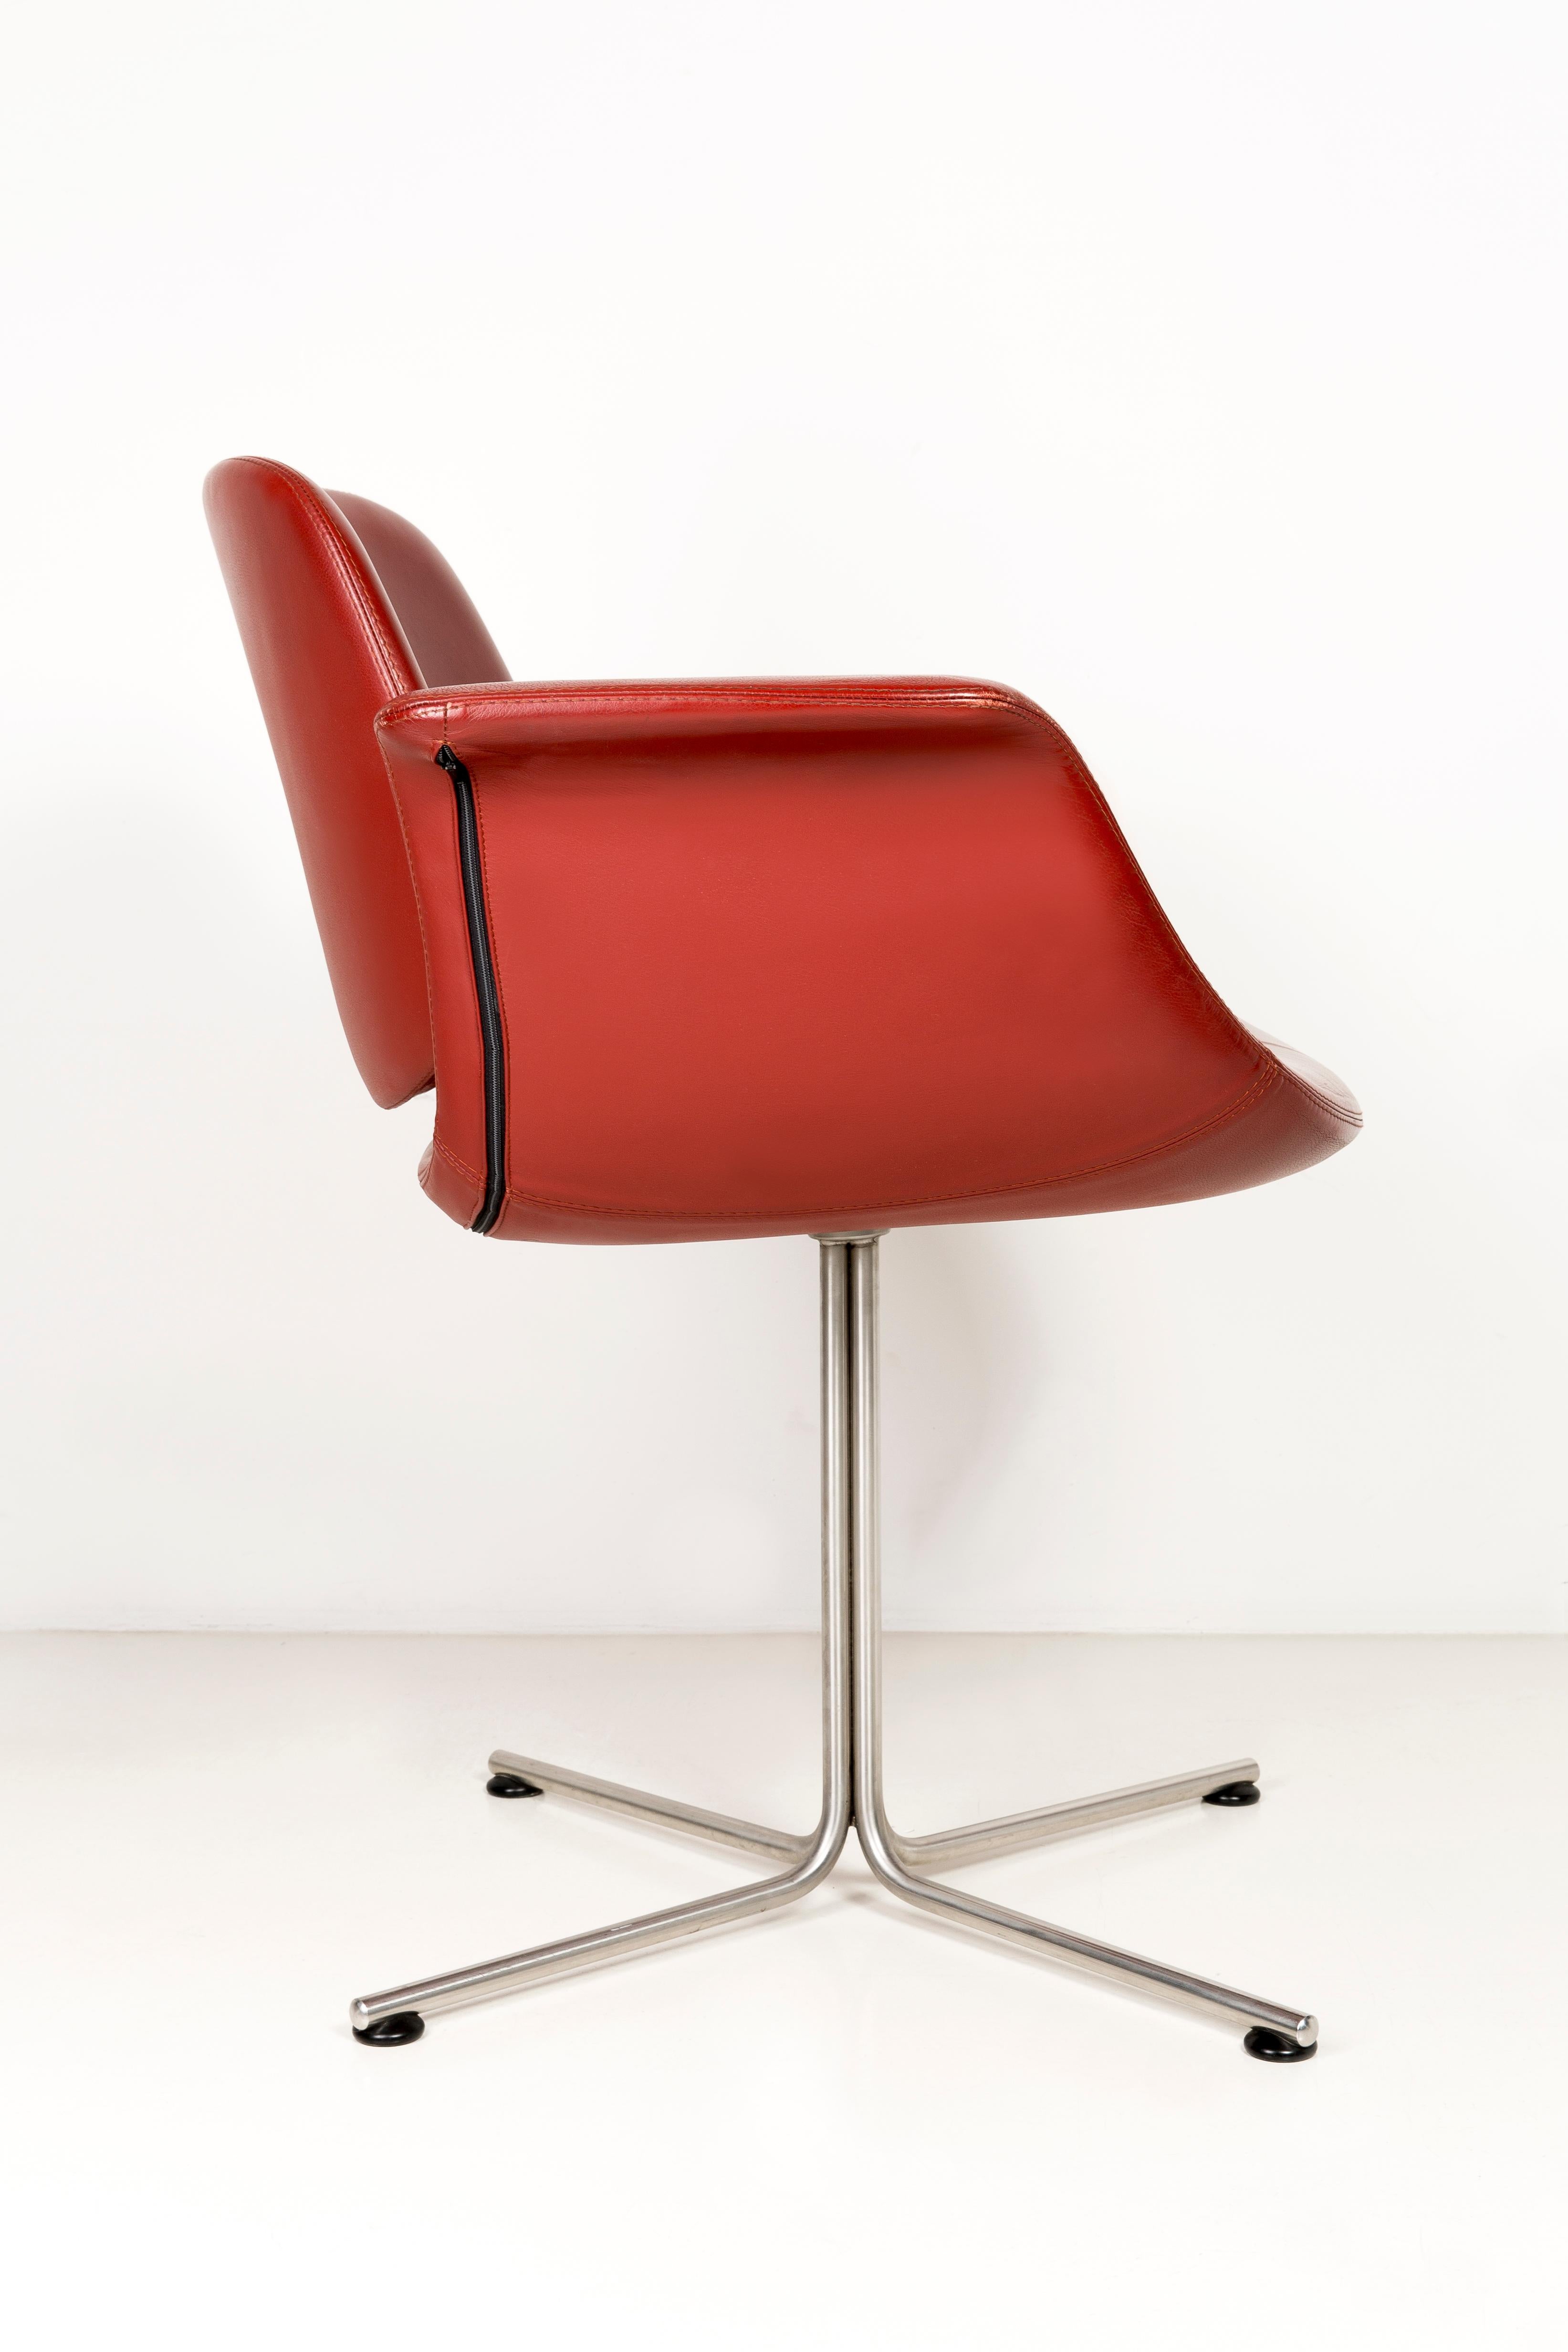 Minimalist Unique Flamingo Chair, Red Leather, Erik Jørgensen, 2000s, Denmark